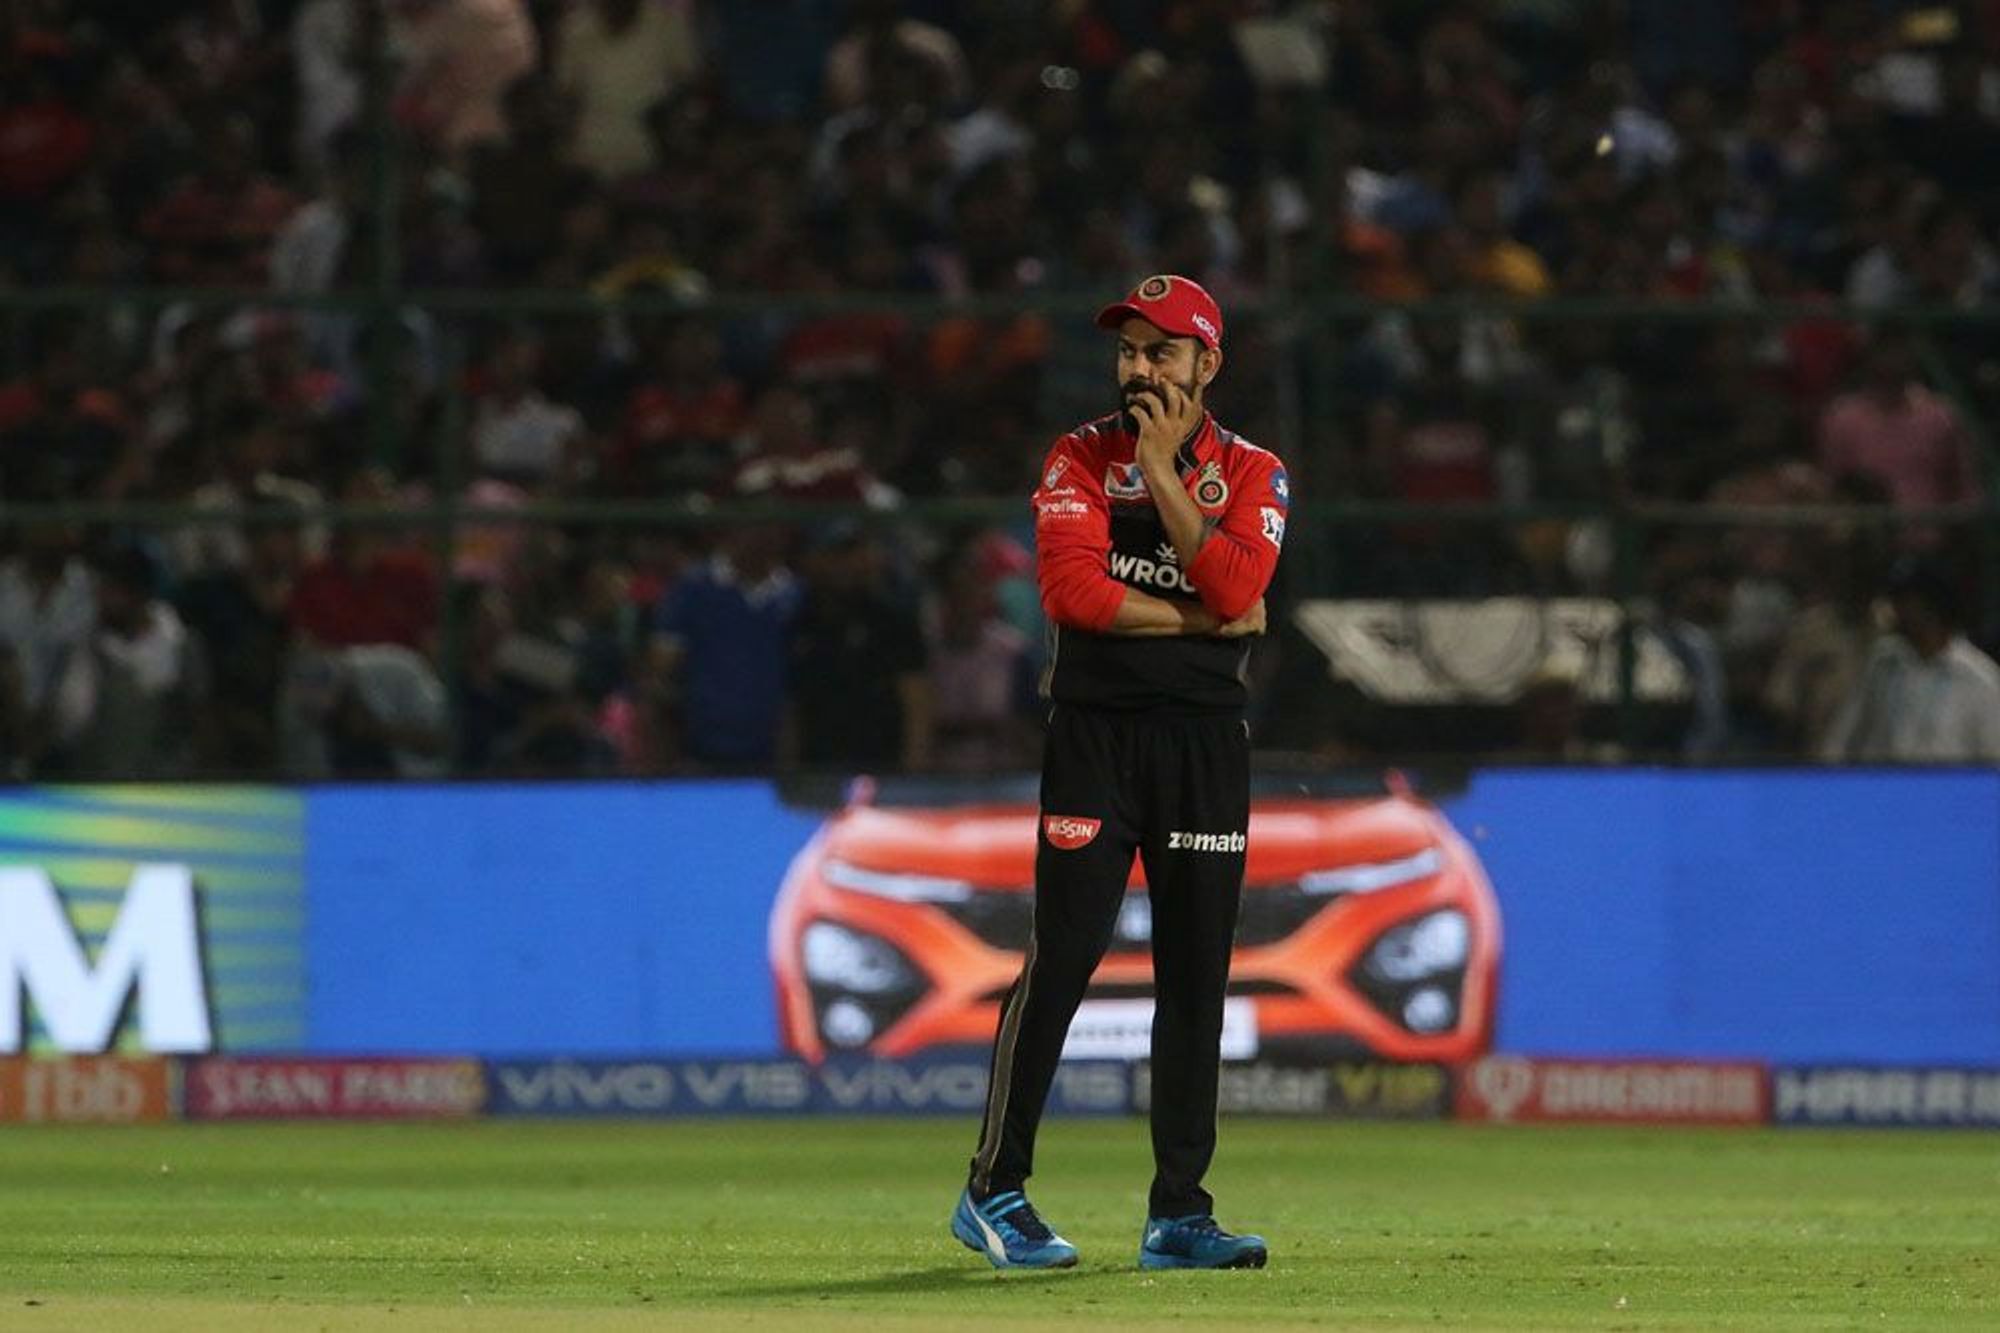 IPL 2019: 3 खिलाड़ी जिन्हें मौका दें विराट तो जीत की पटरी पर लौट सकती है रॉयल चैलेंजर्स बैंगलोर 9